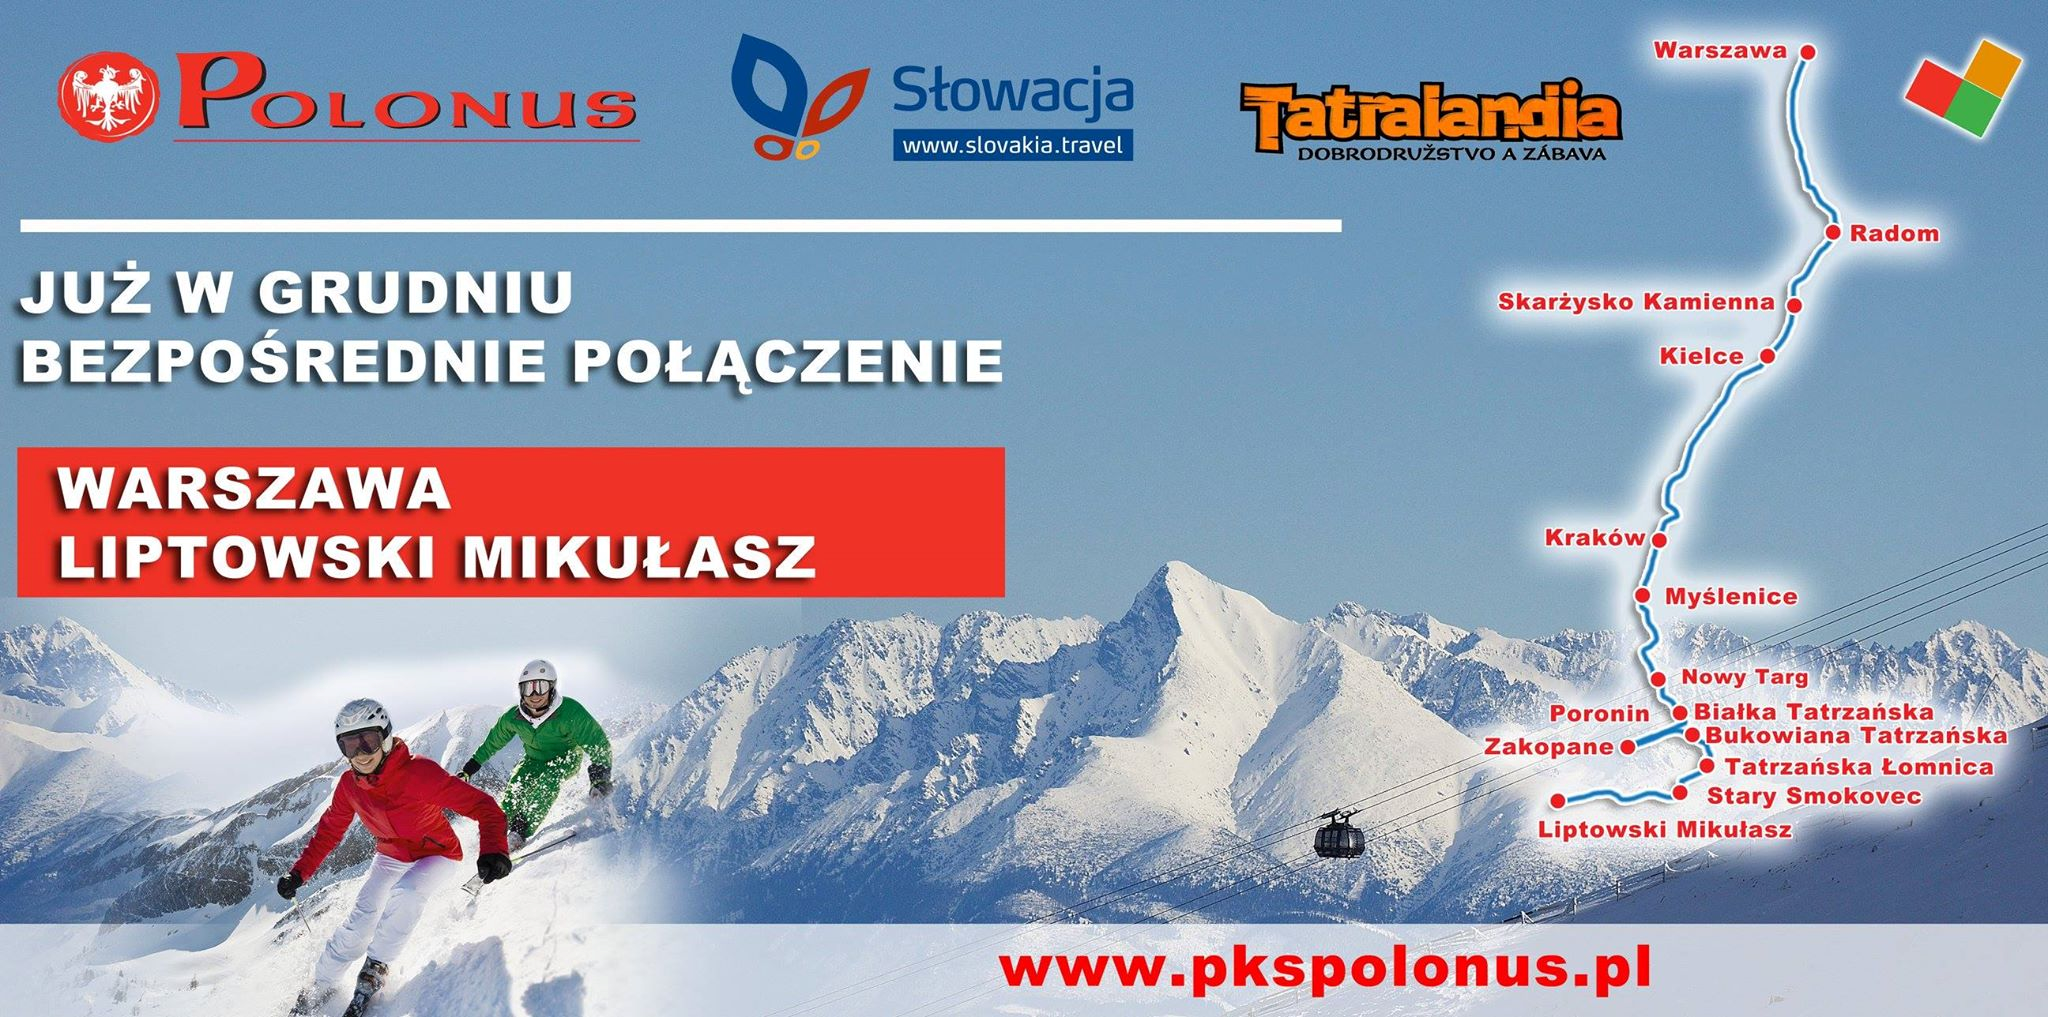 PKS Polonius - połączenie autobusowe do Tatralandii